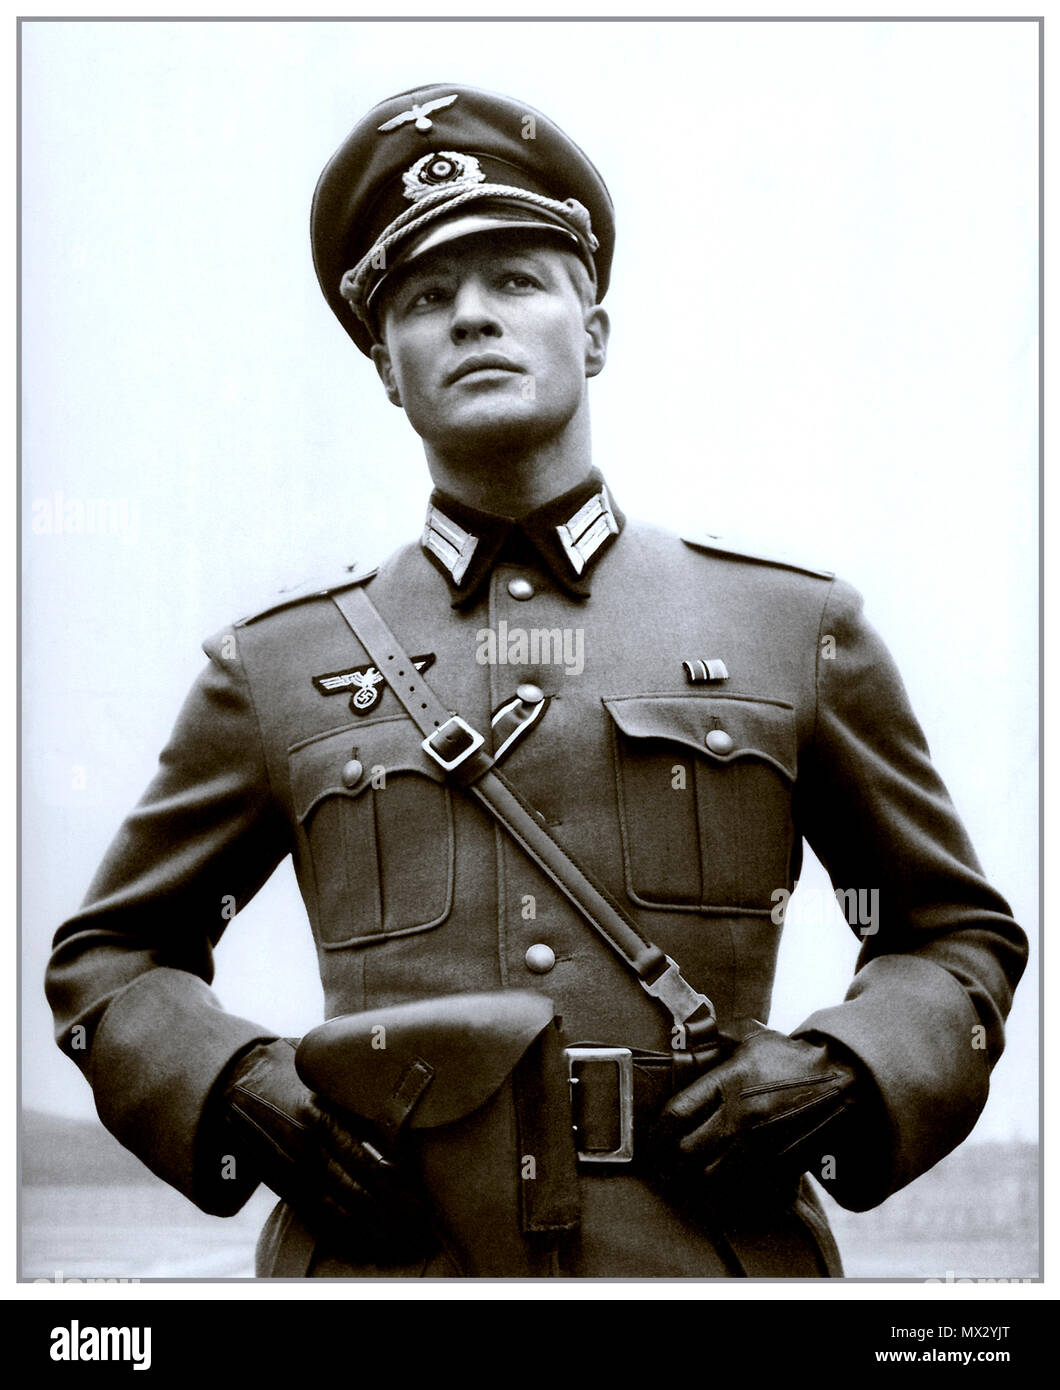 Vintage B&W film image fixe de Marlon Brando dans l'uniforme militaire nazie avec dans l'un des Lions 1958 Twentieth Century Fox Film film réalisé par Edward Dmytryk réalisateur canado-américaines Banque D'Images